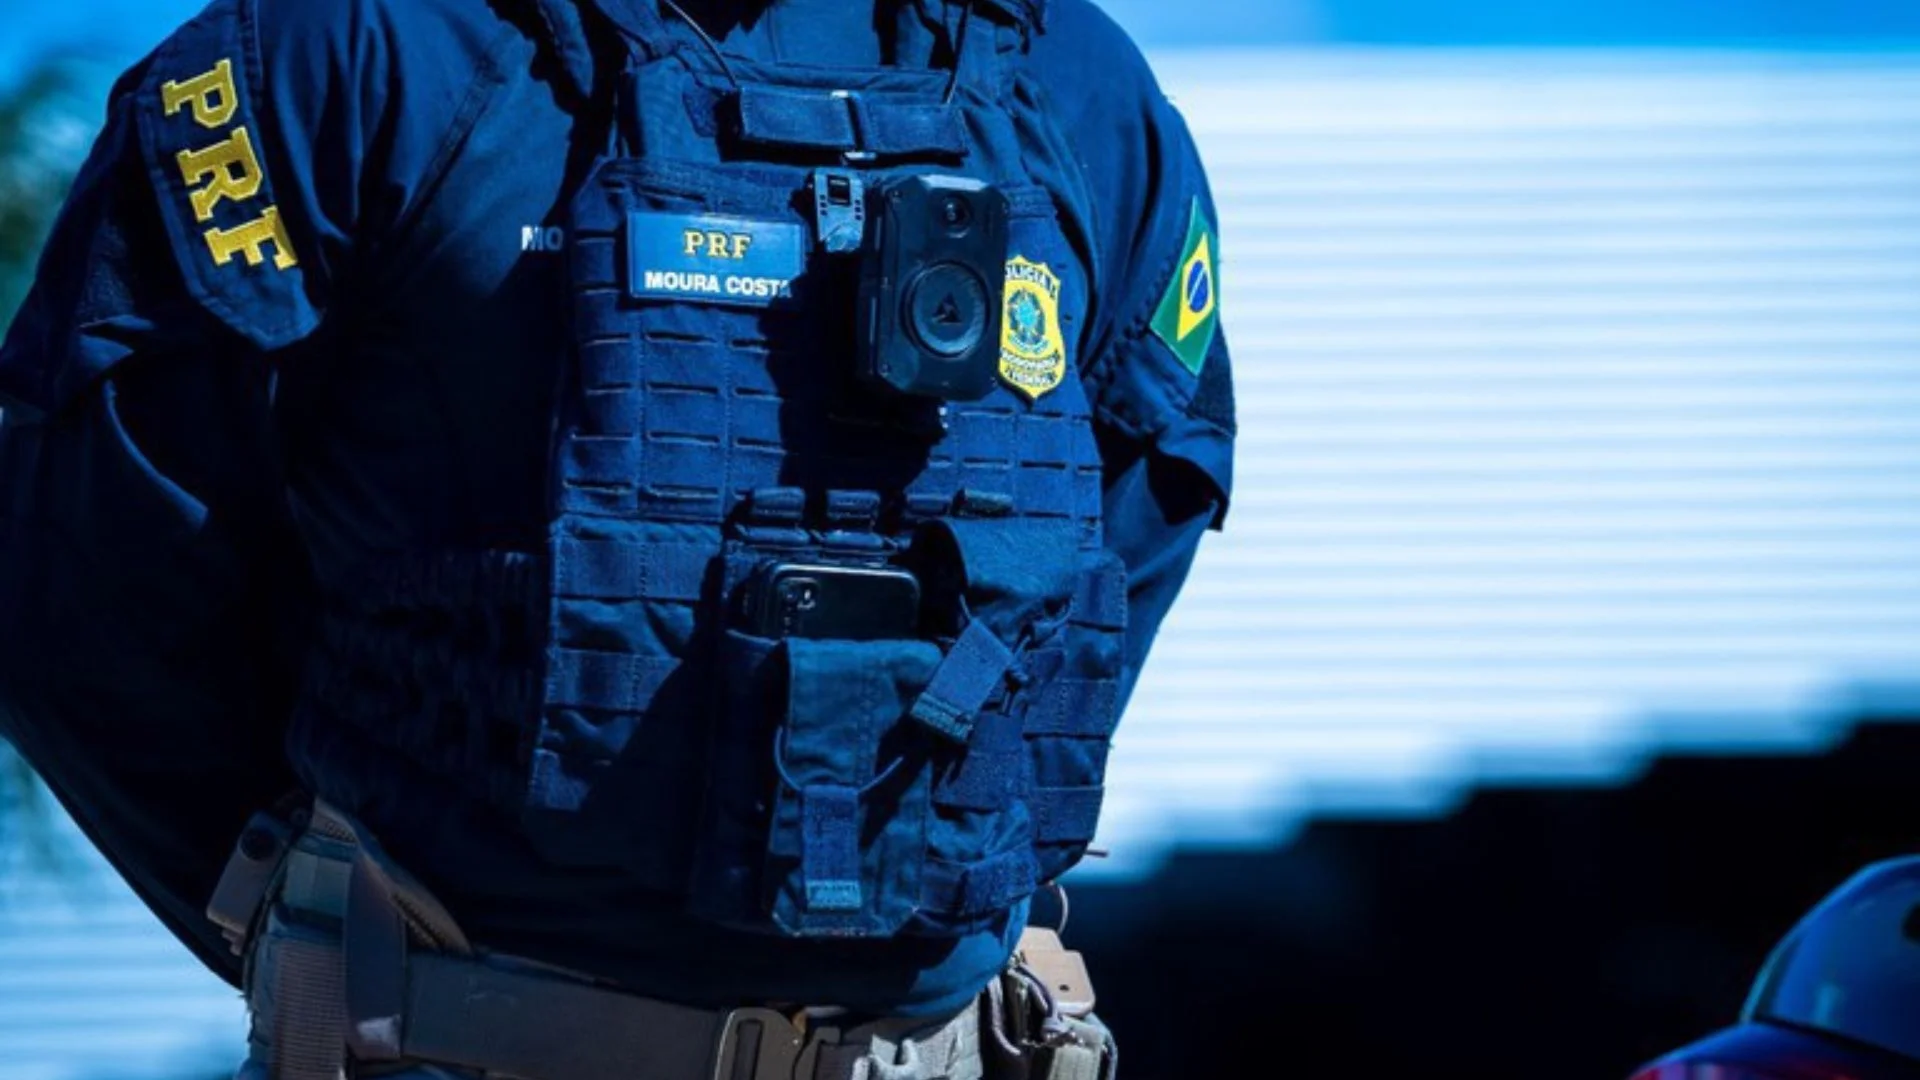 Policia Rodoviária Federal vai aderir câmeras corporais e veiculares